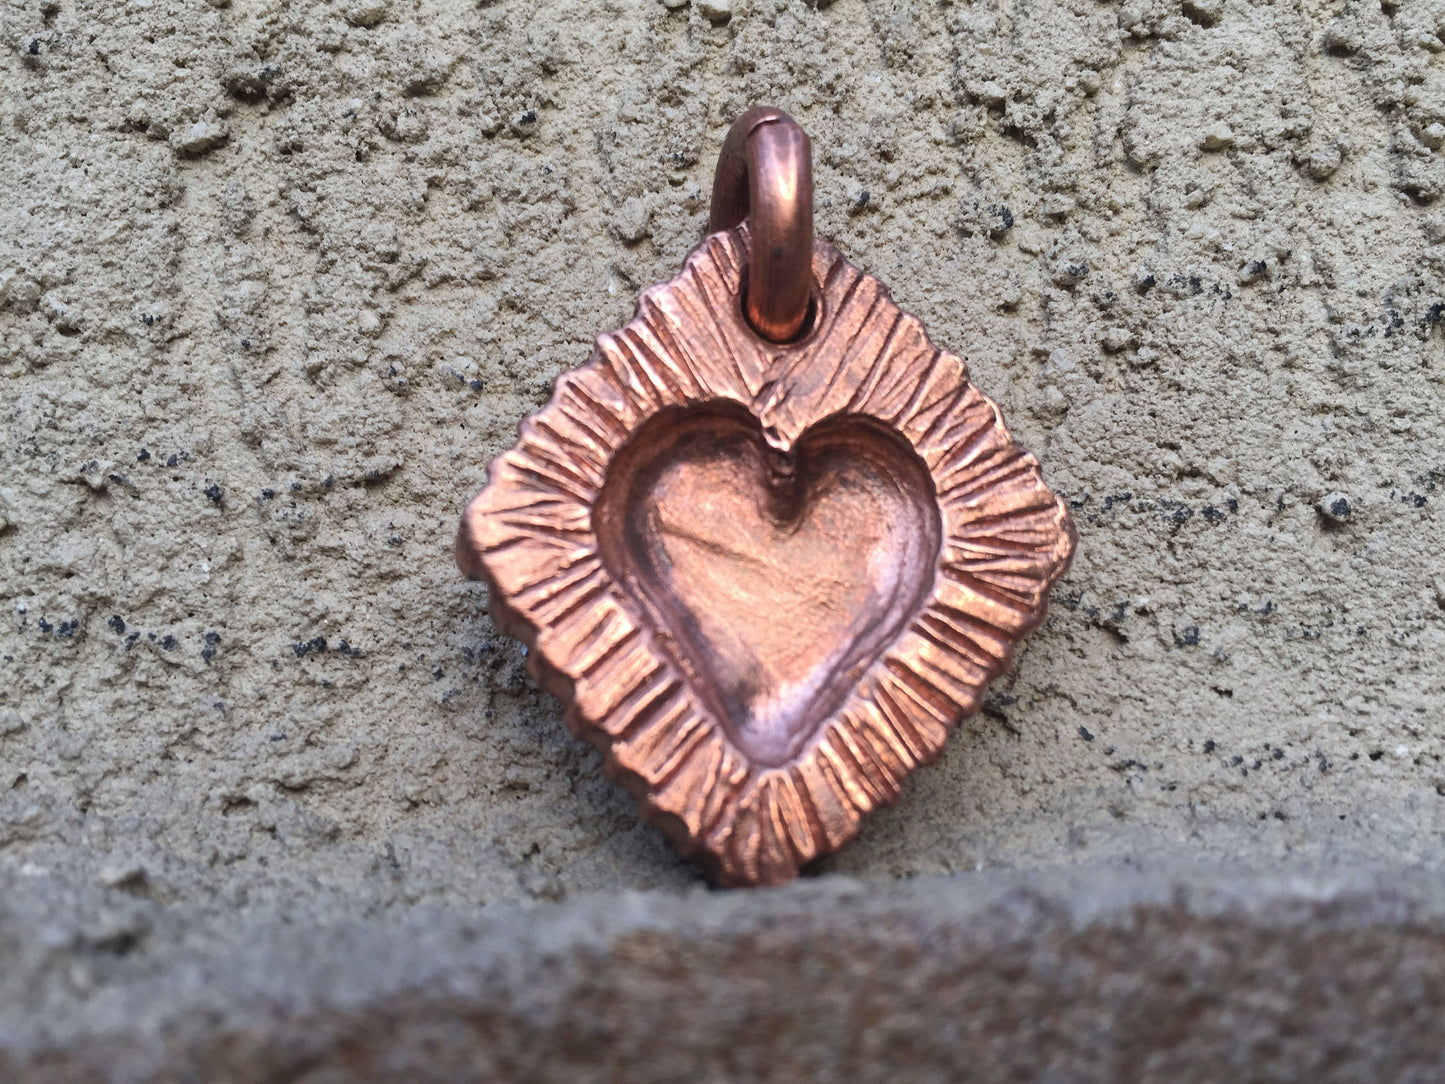 Copper anniversary, 7 year anniversary, copper gift, key chain, keychain, copper heart, copper pendant, copper jewelry, copper necklace